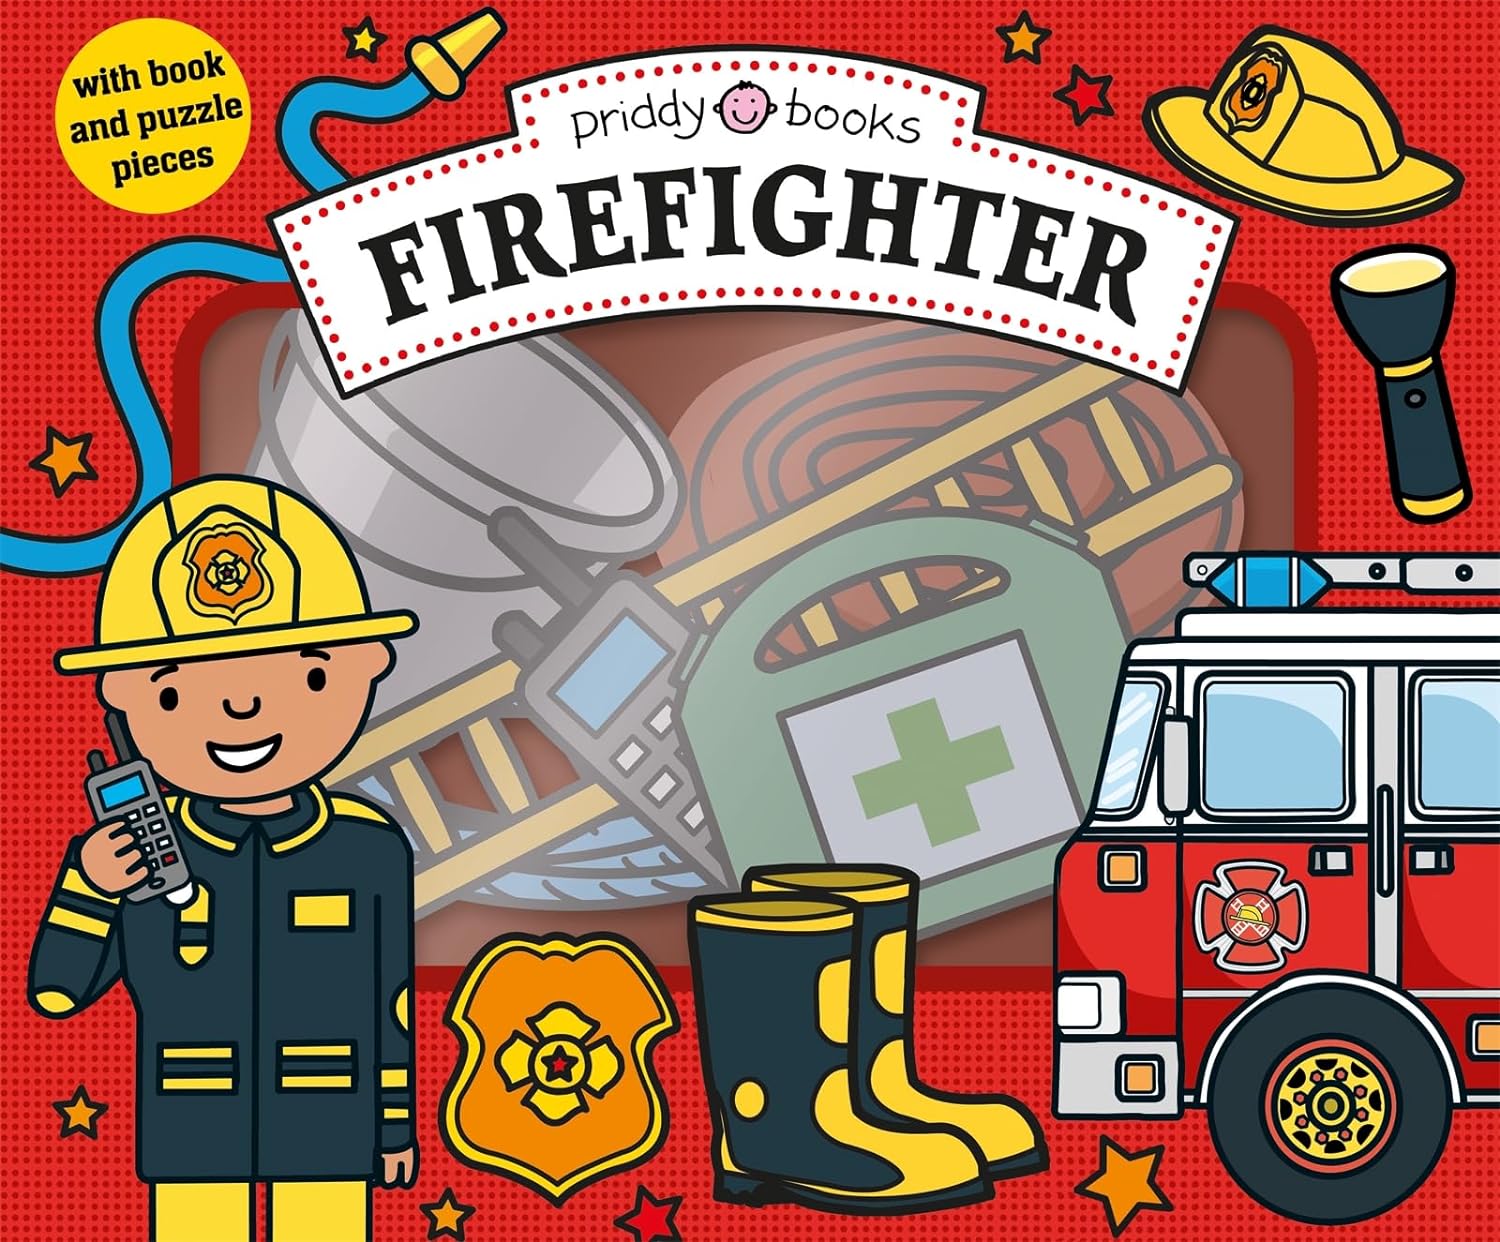 Firefighter: Let's Pretend Sets